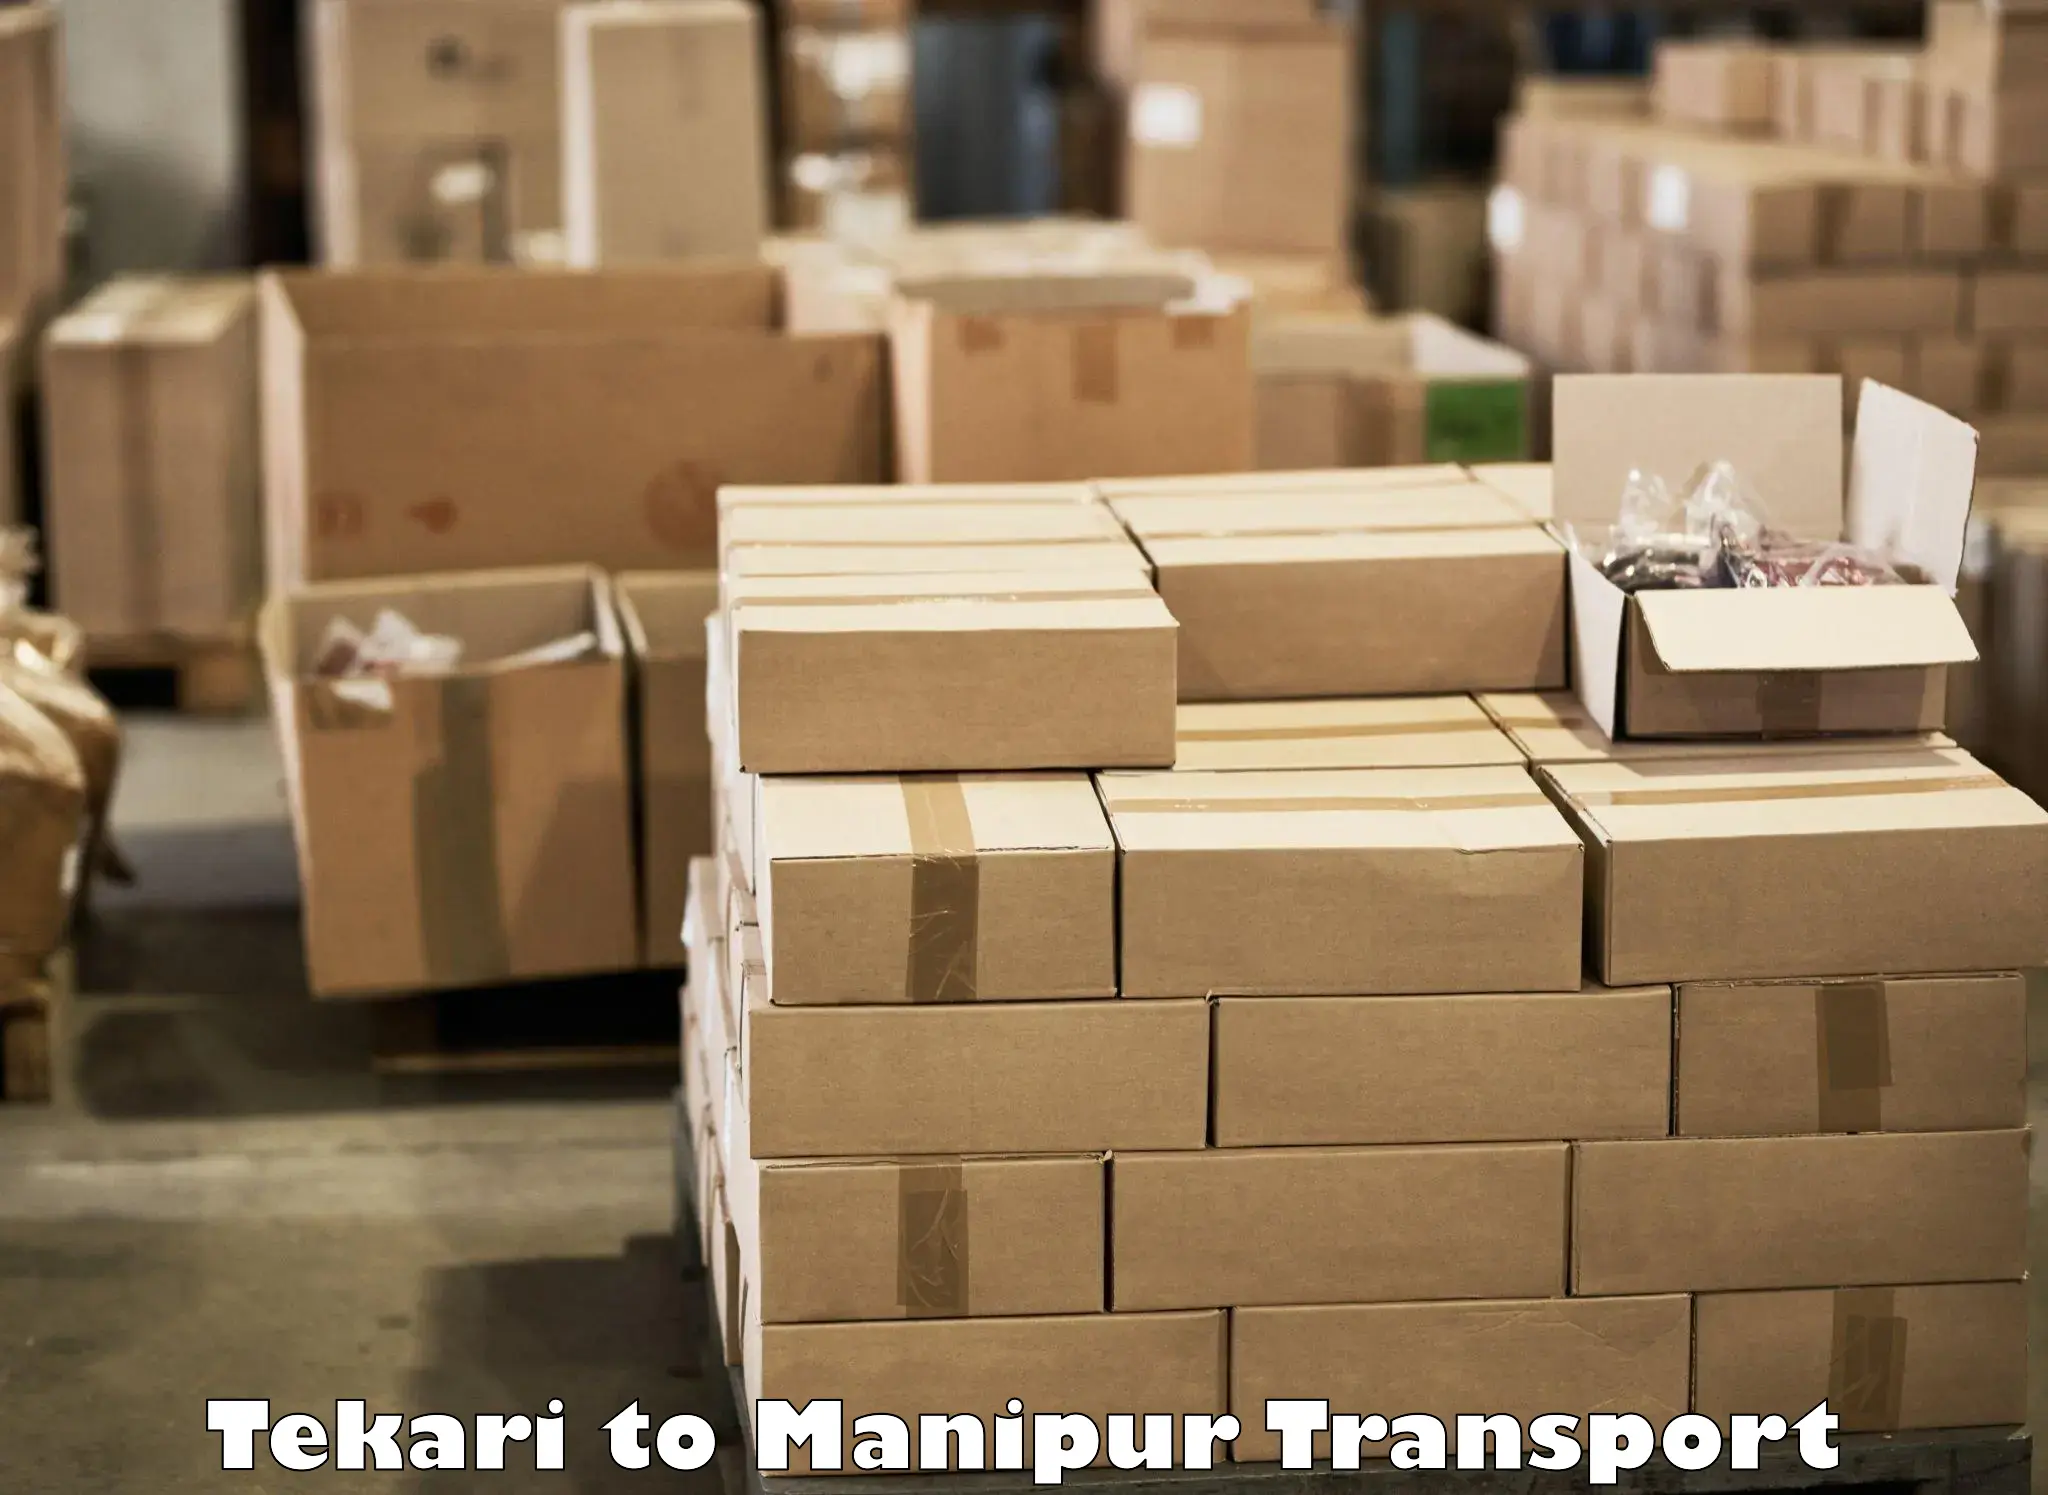 Land transport services Tekari to Imphal